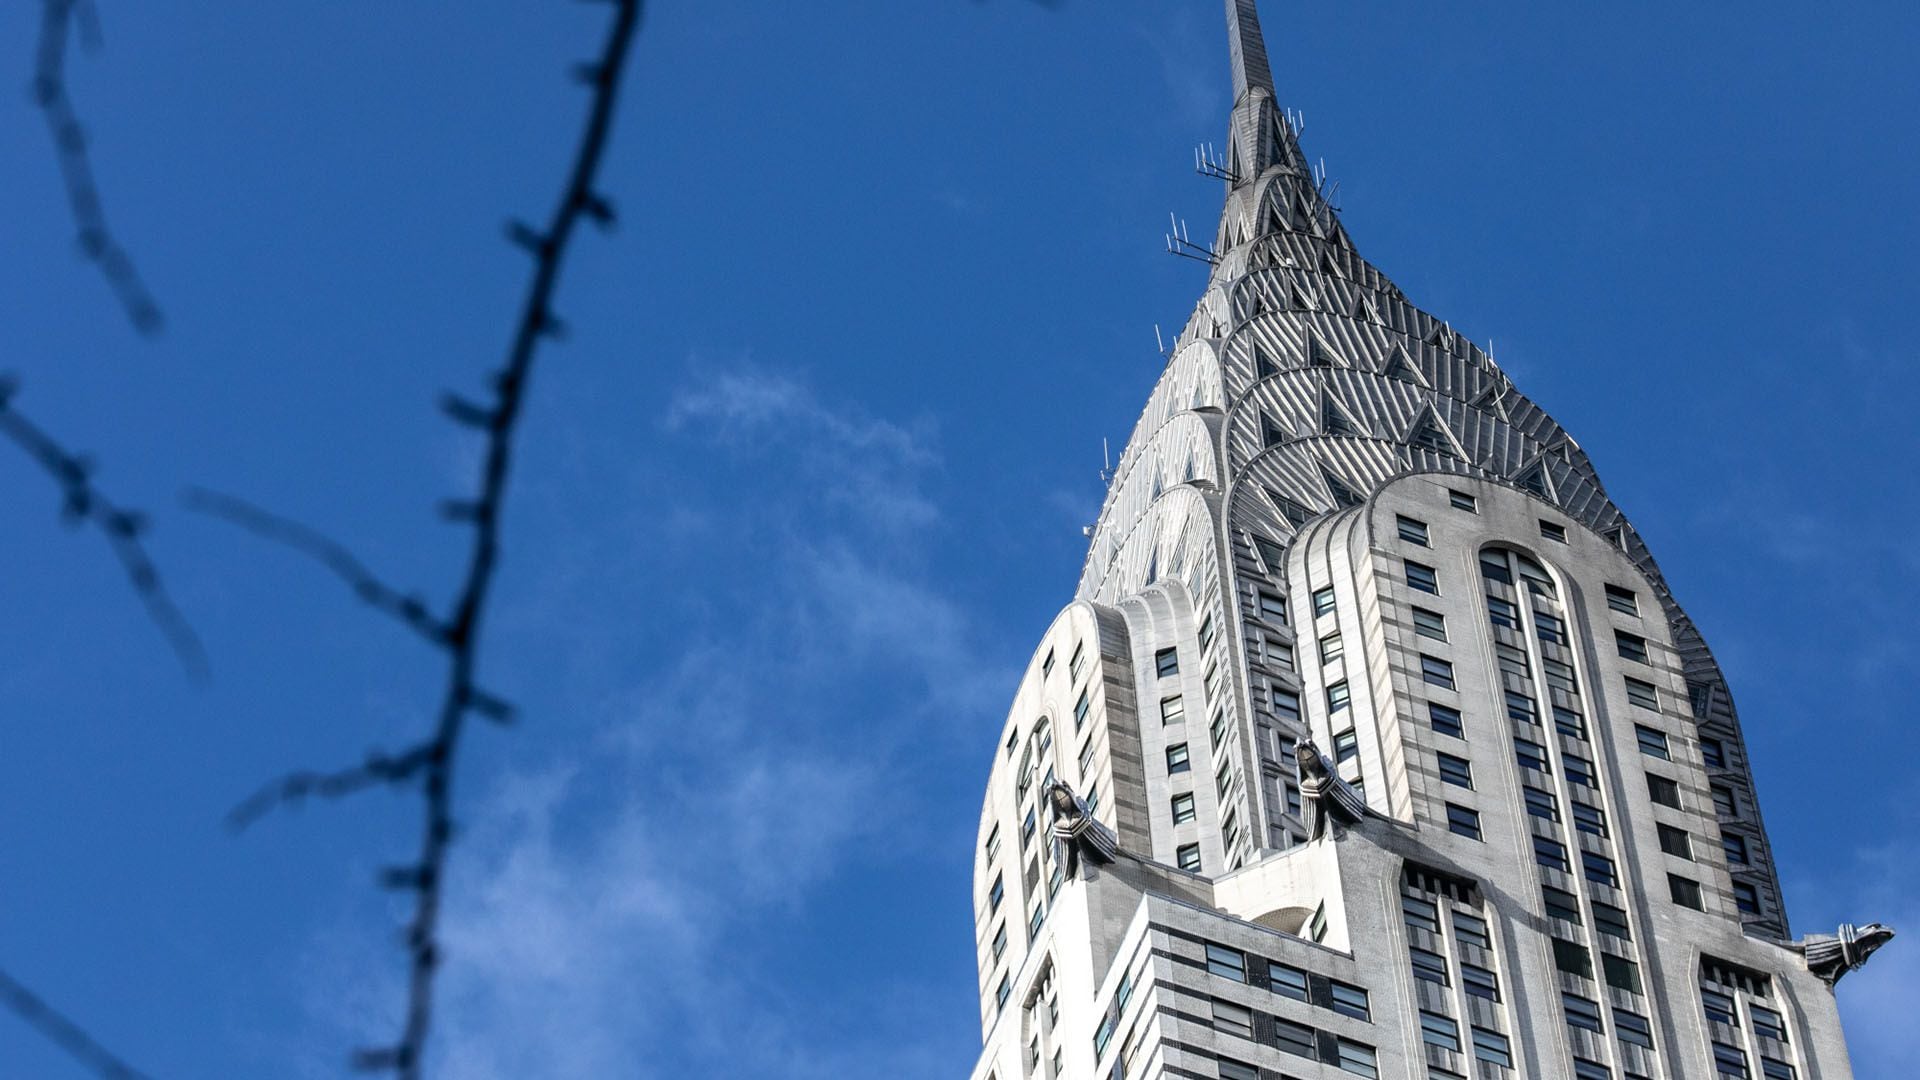 Remate del Edificio Chrysler en Nueva York cuya estructura se hizo en acero (Bloomberg)